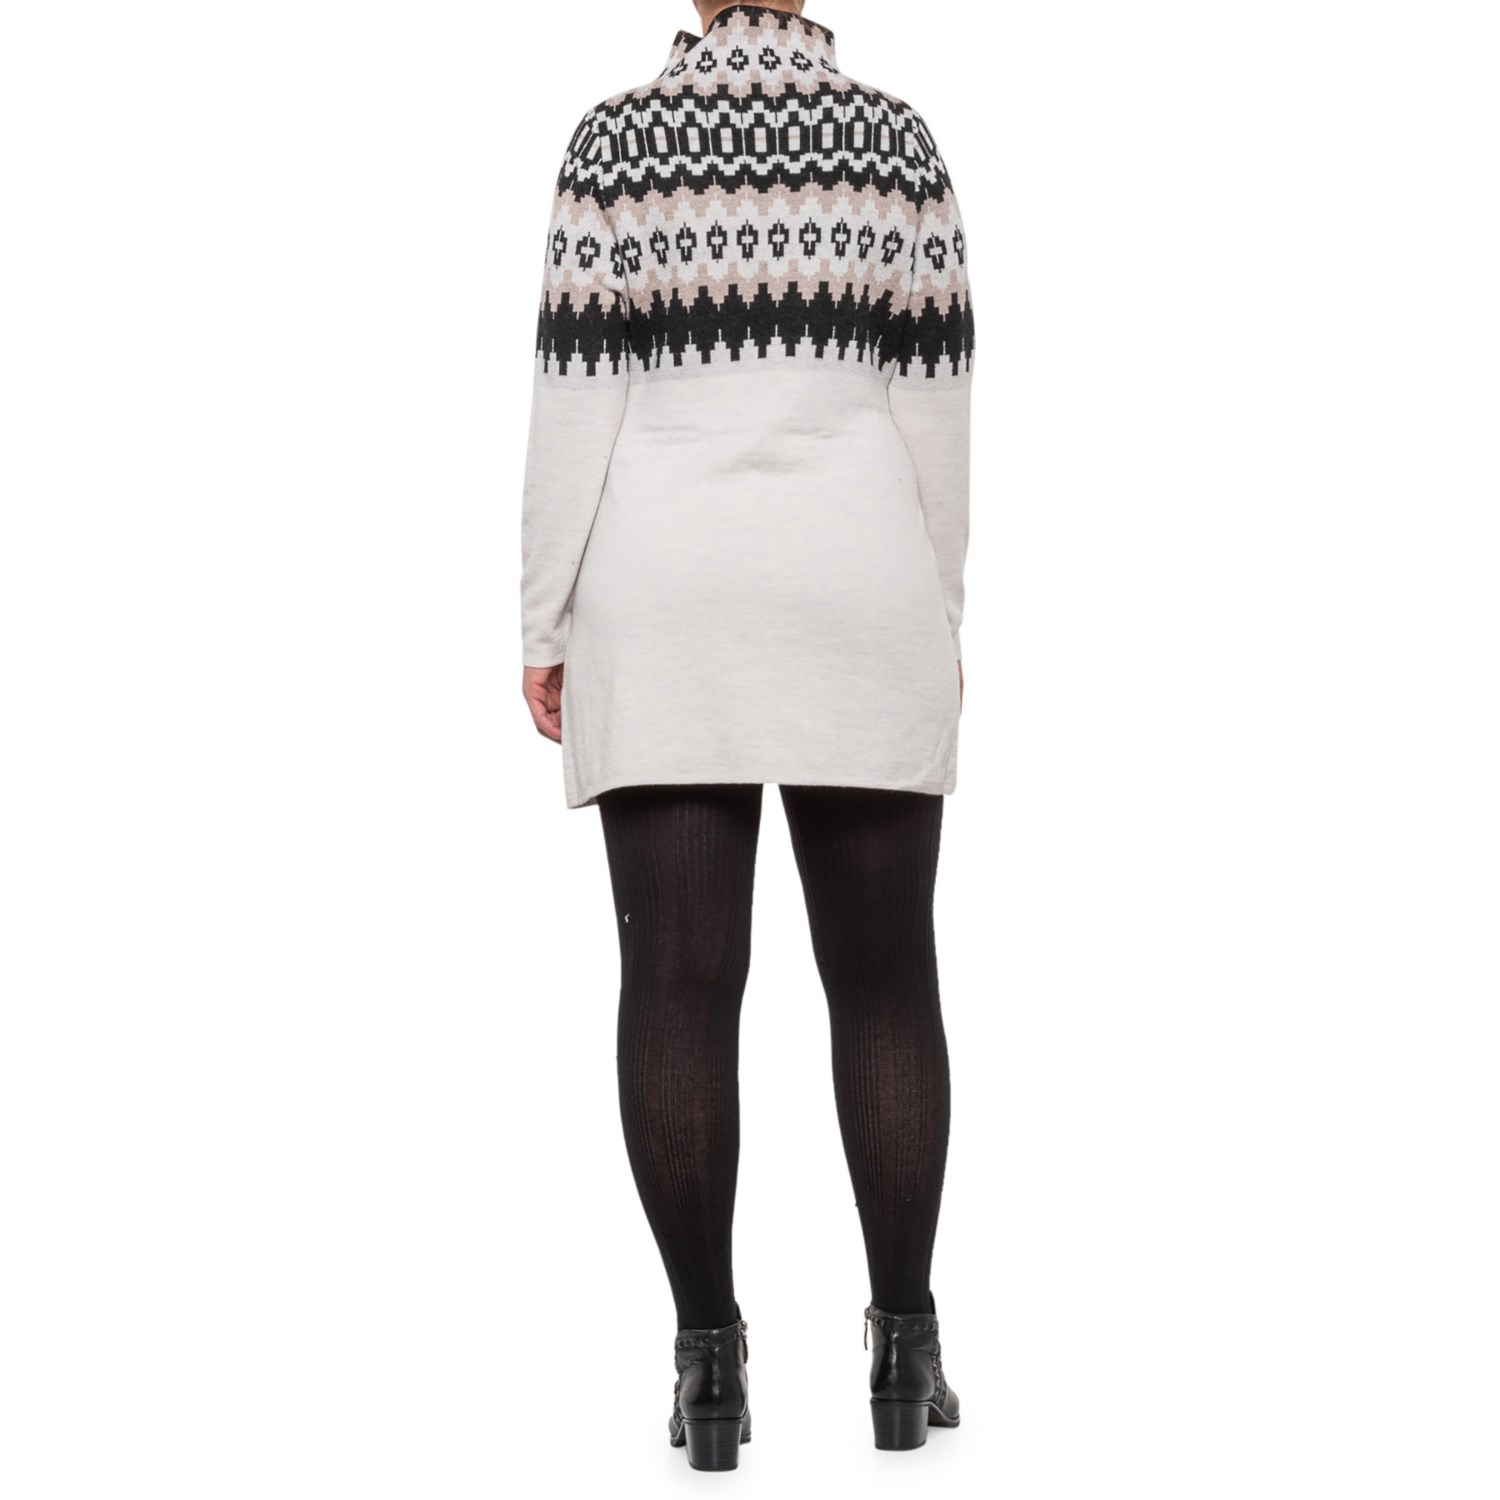 women's plus size merino wool sweater